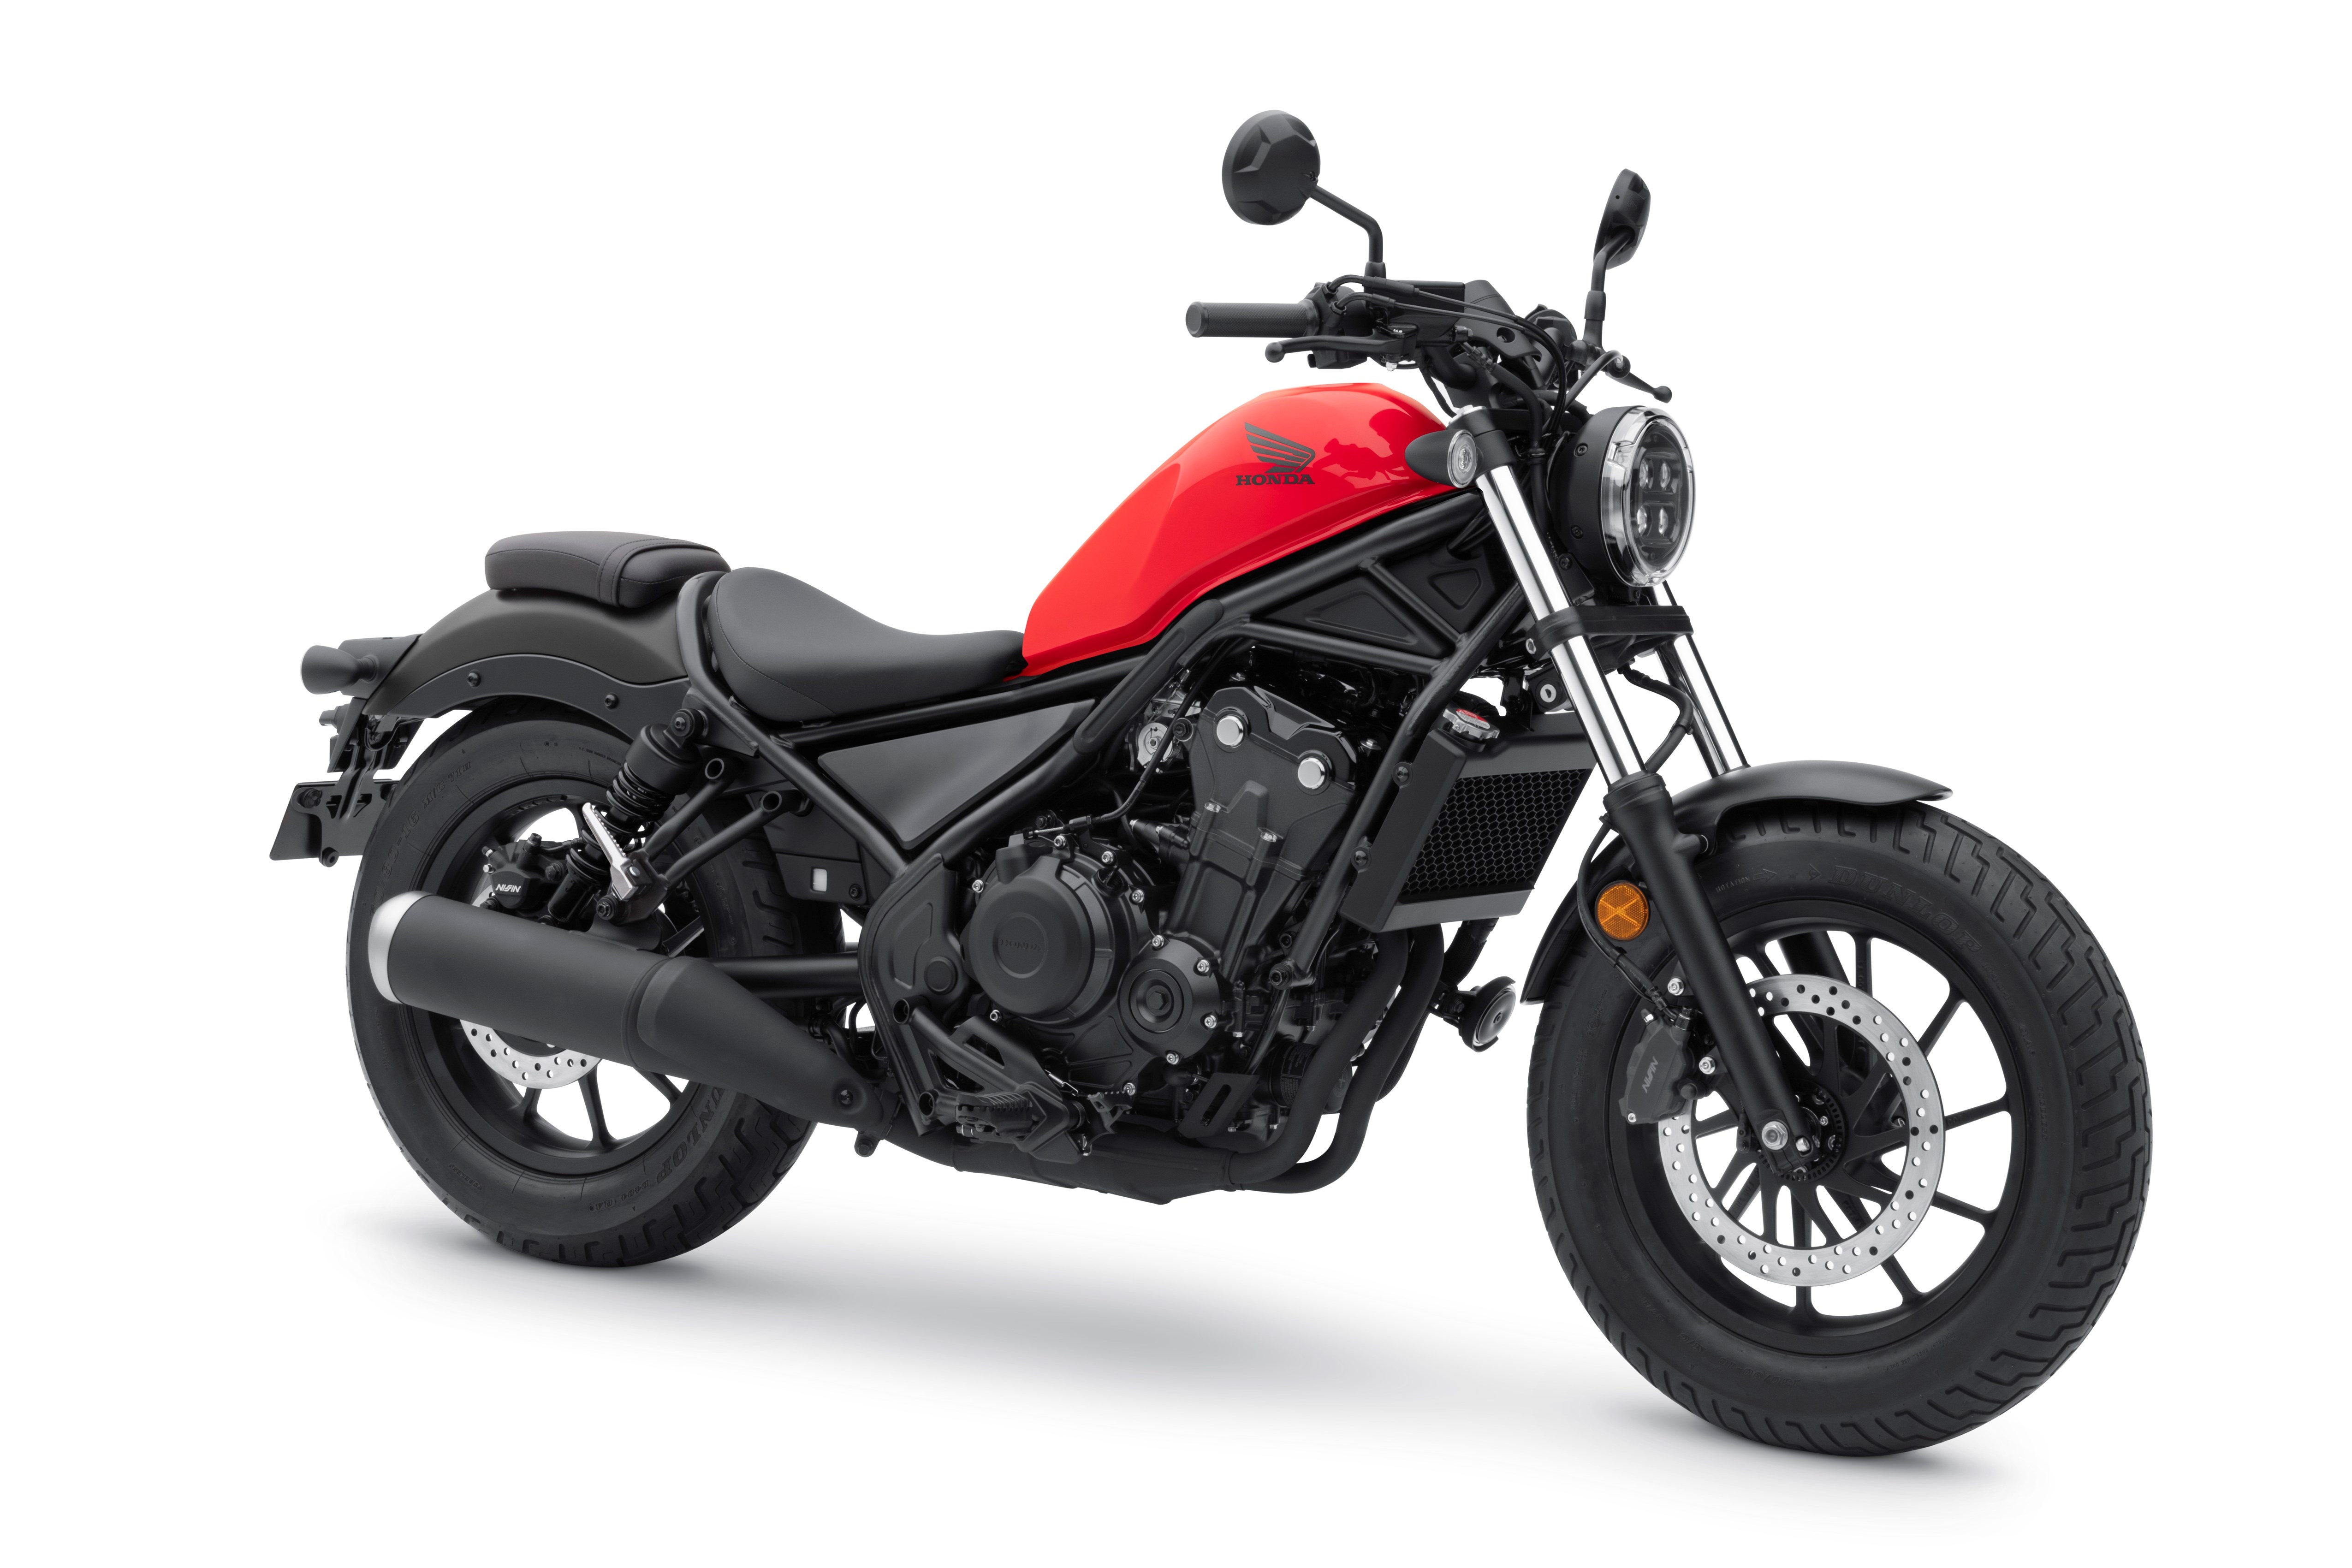 2020 Honda Rebel — More Refinements - Motorcycle news, Motorcycle ...